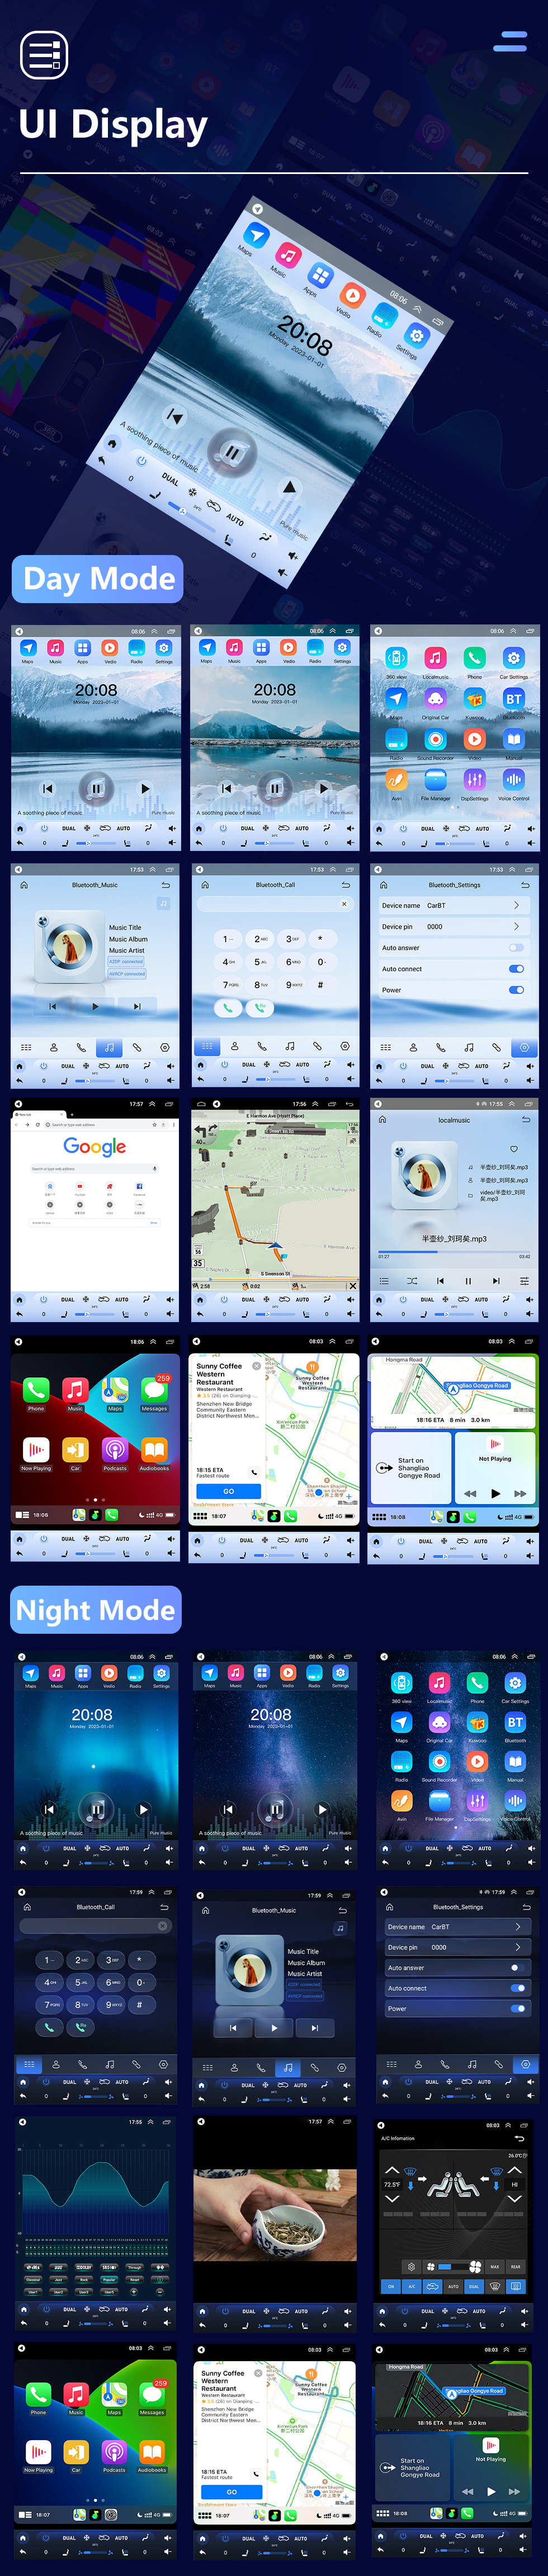 Seicane 9,7-дюймовый Android 10.0 2012-2017 Chevy Chevrolet Captiva GPS-навигация Радио с сенсорным экраном HD Поддержка Bluetooth Carplay Mirror Link